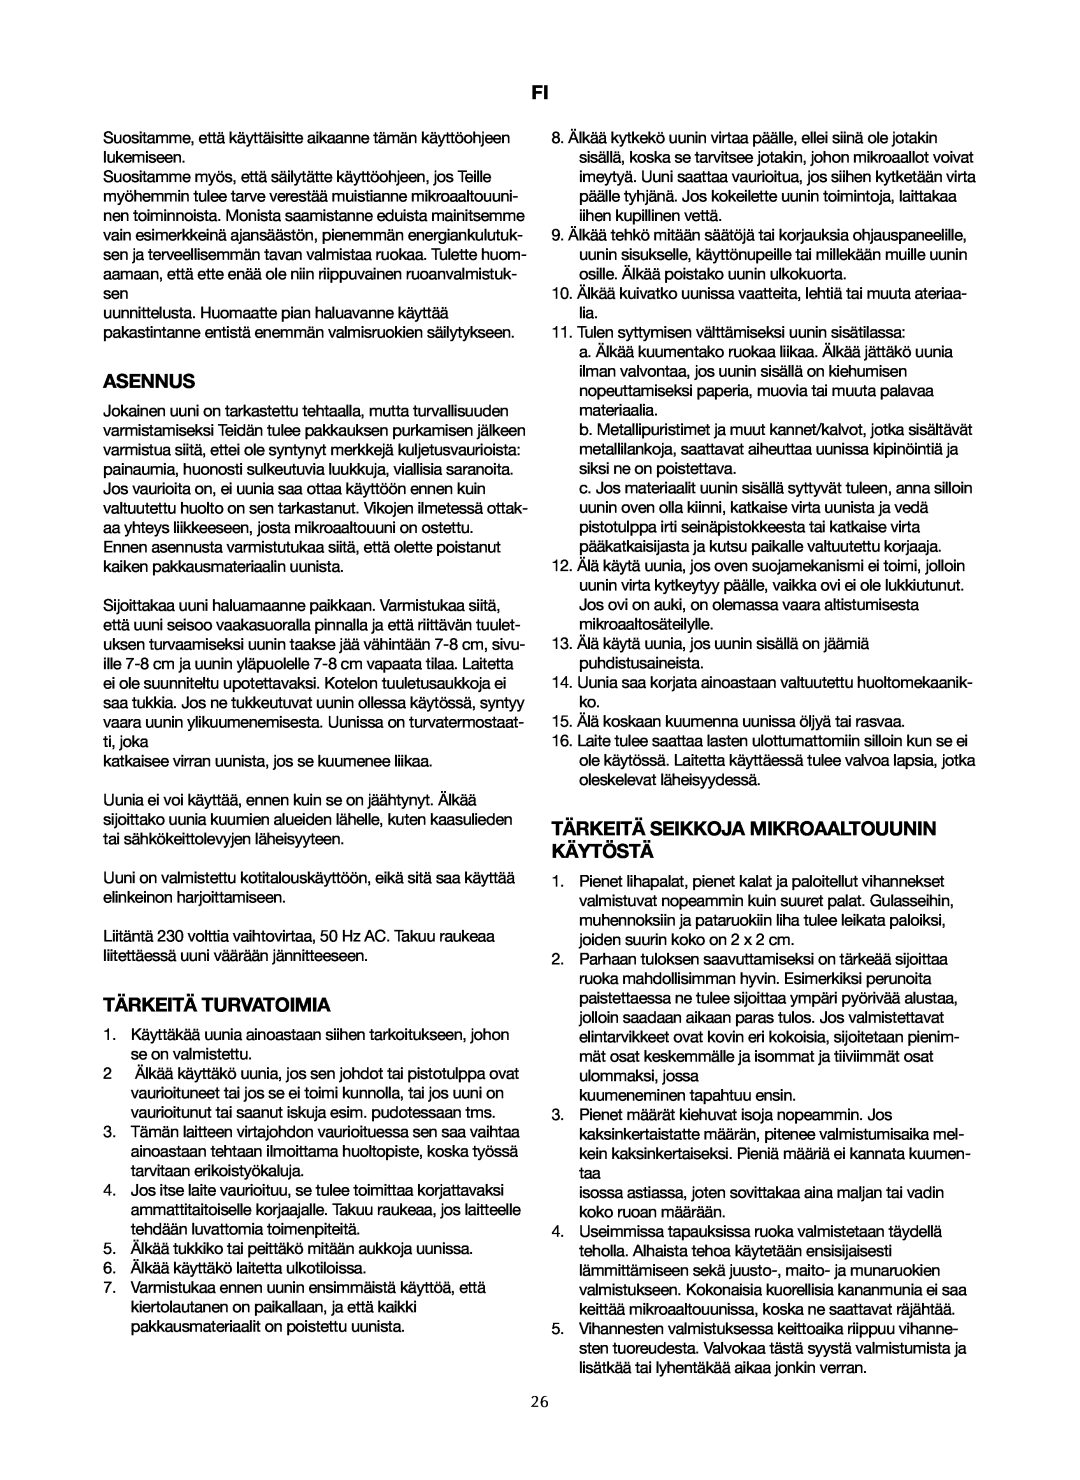 Ide Line 753-122 manual Asennus, Tärkeitä Turvatoimia, Tärkeitä Seikkoja Mikroaaltouunin Käytöstä 